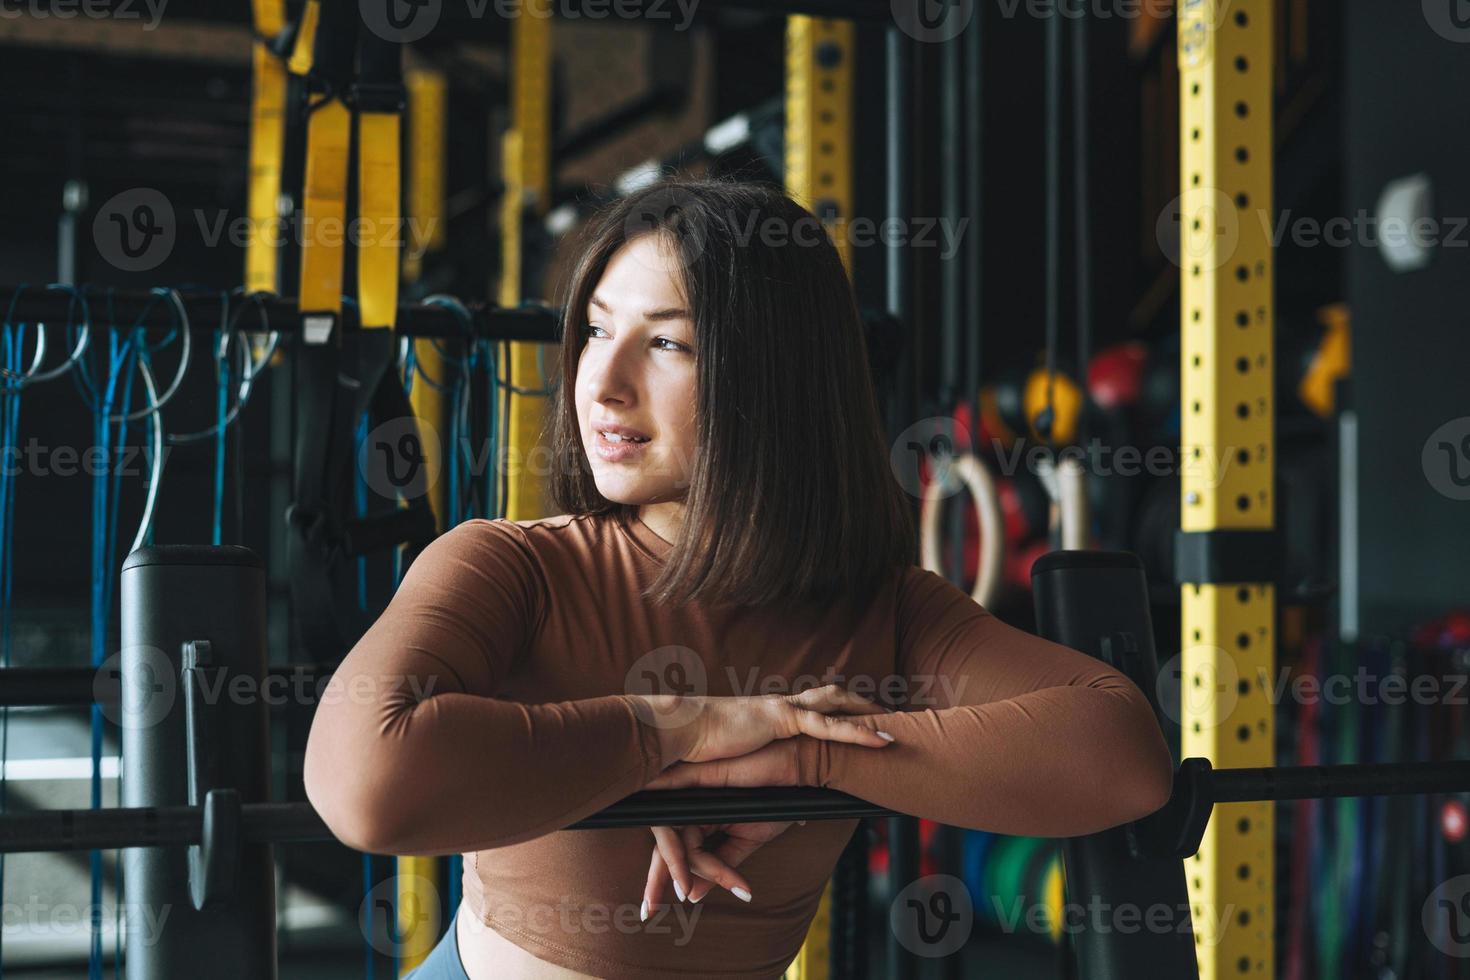 retrato de una joven morena con ropa deportiva activa en el gimnasio del club de fitness foto